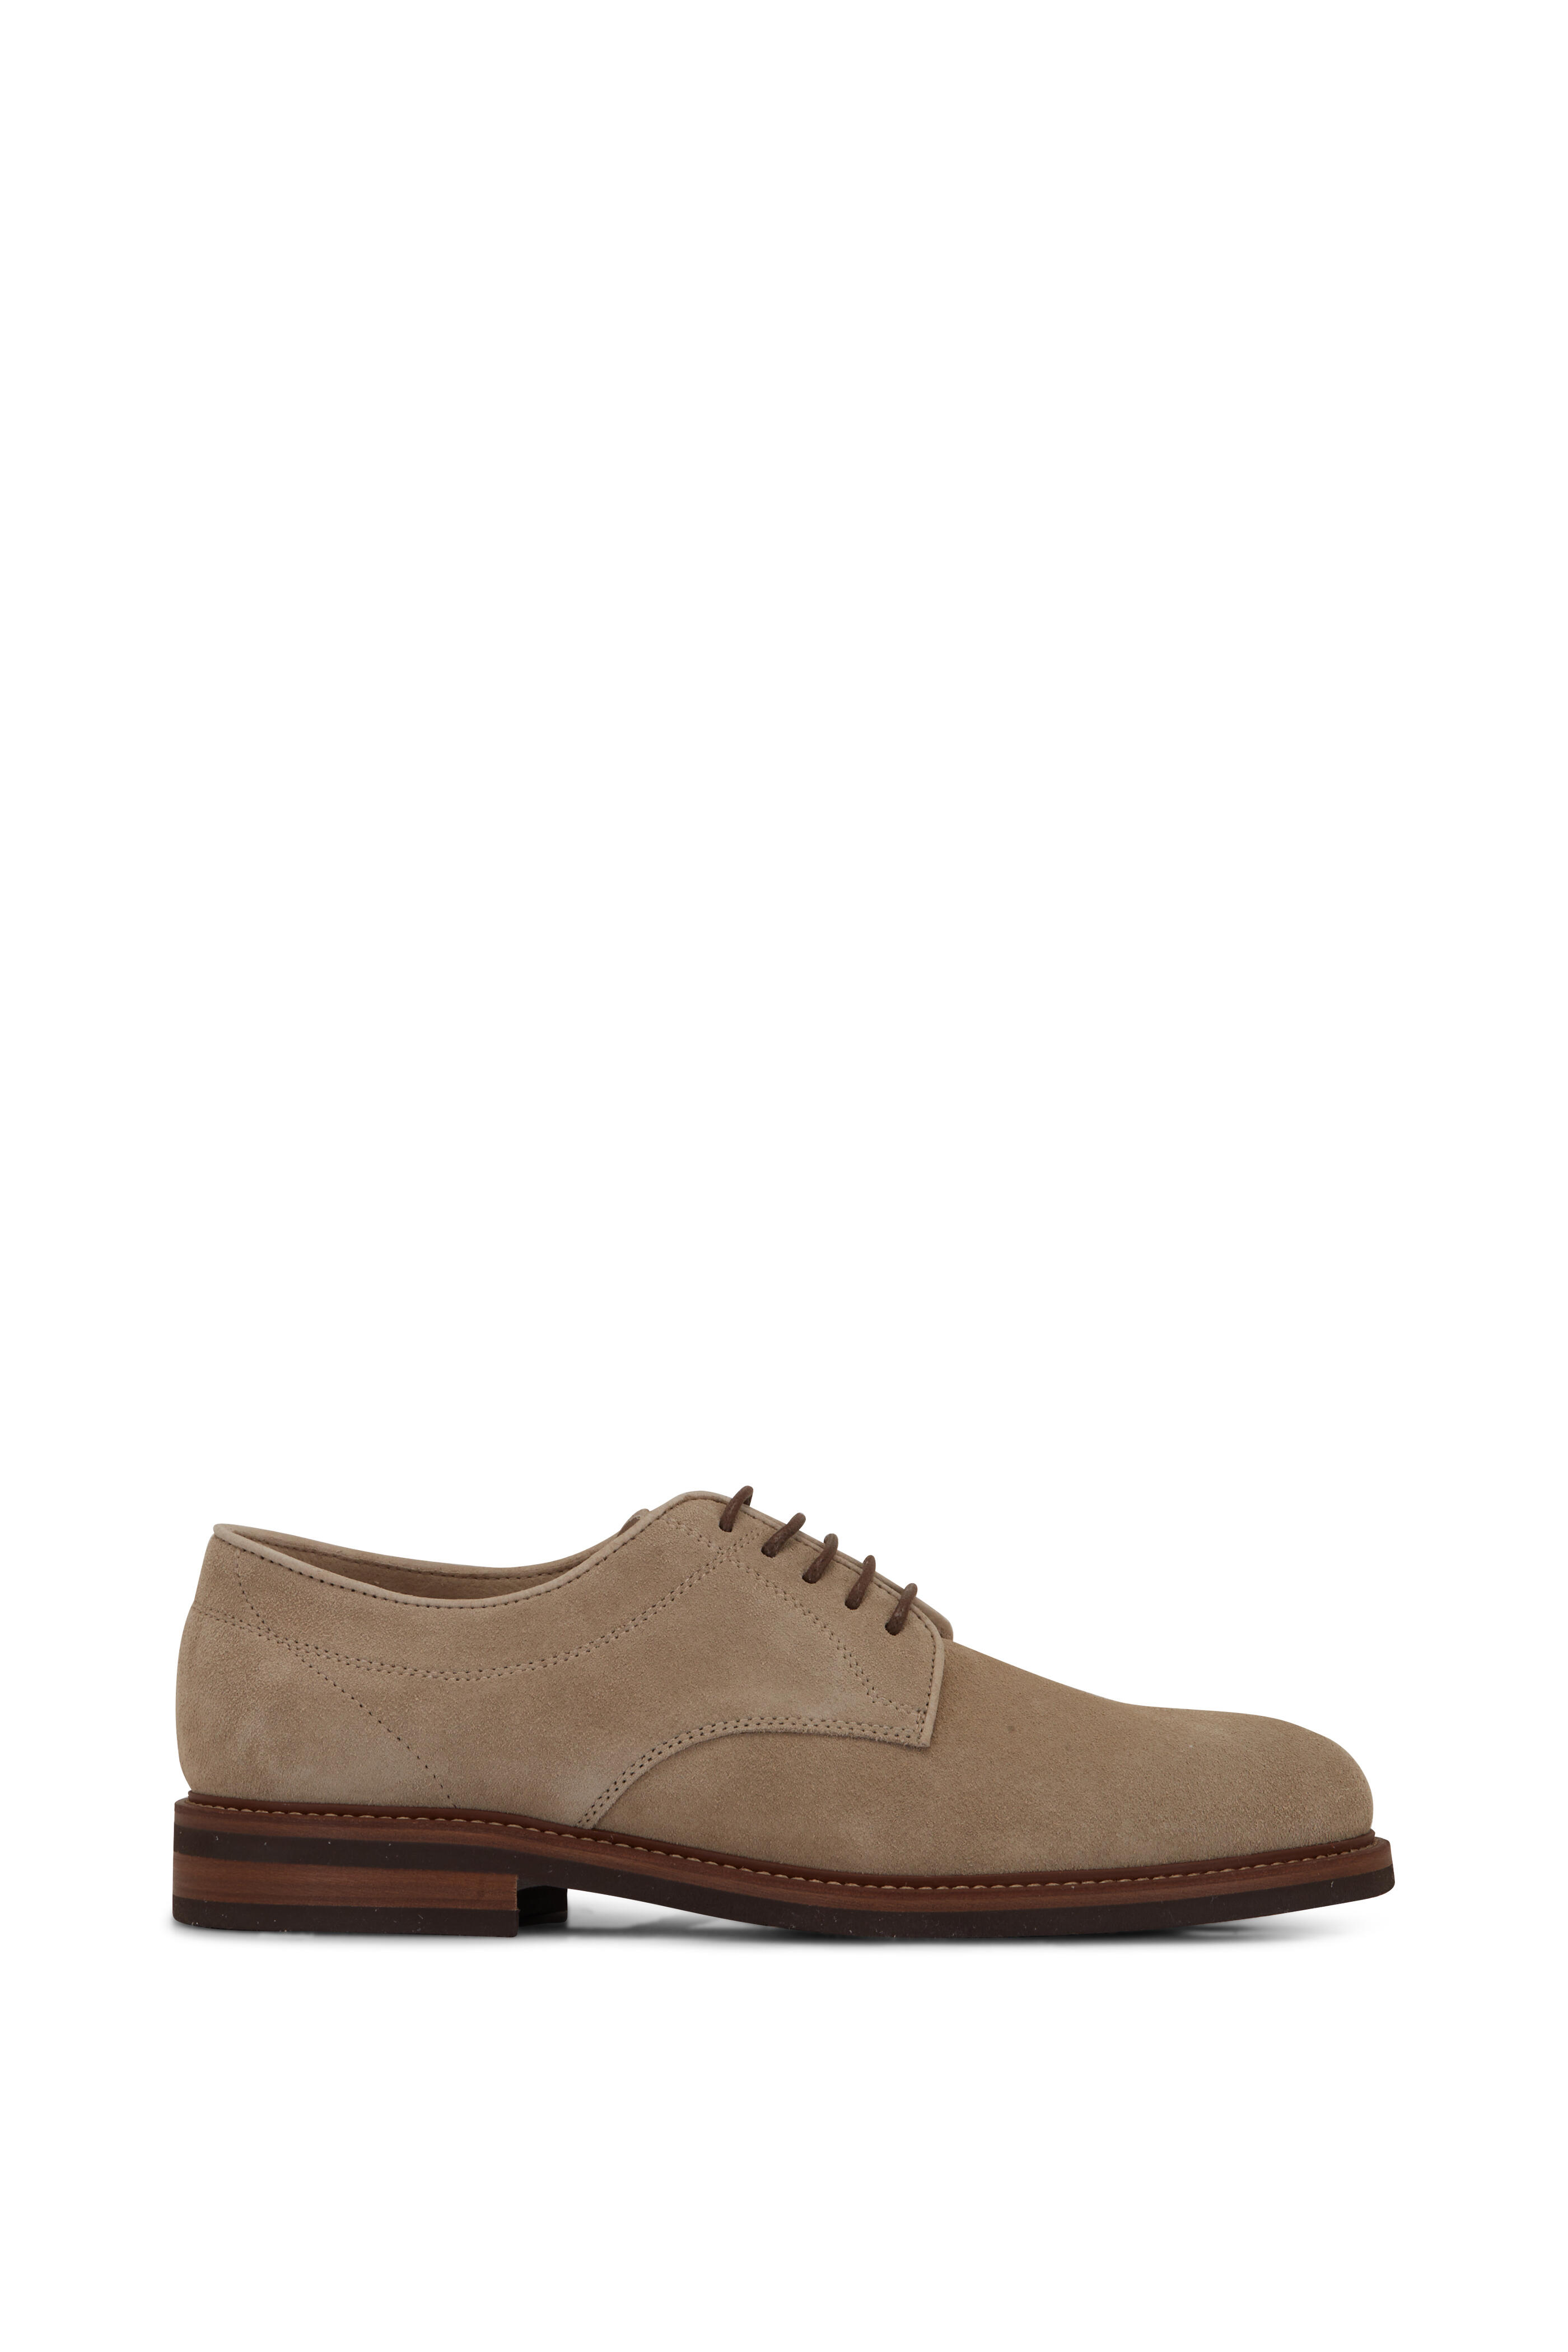 Brunello Cucinelli - Leather Derby Shoes - Mens - Dark Brown